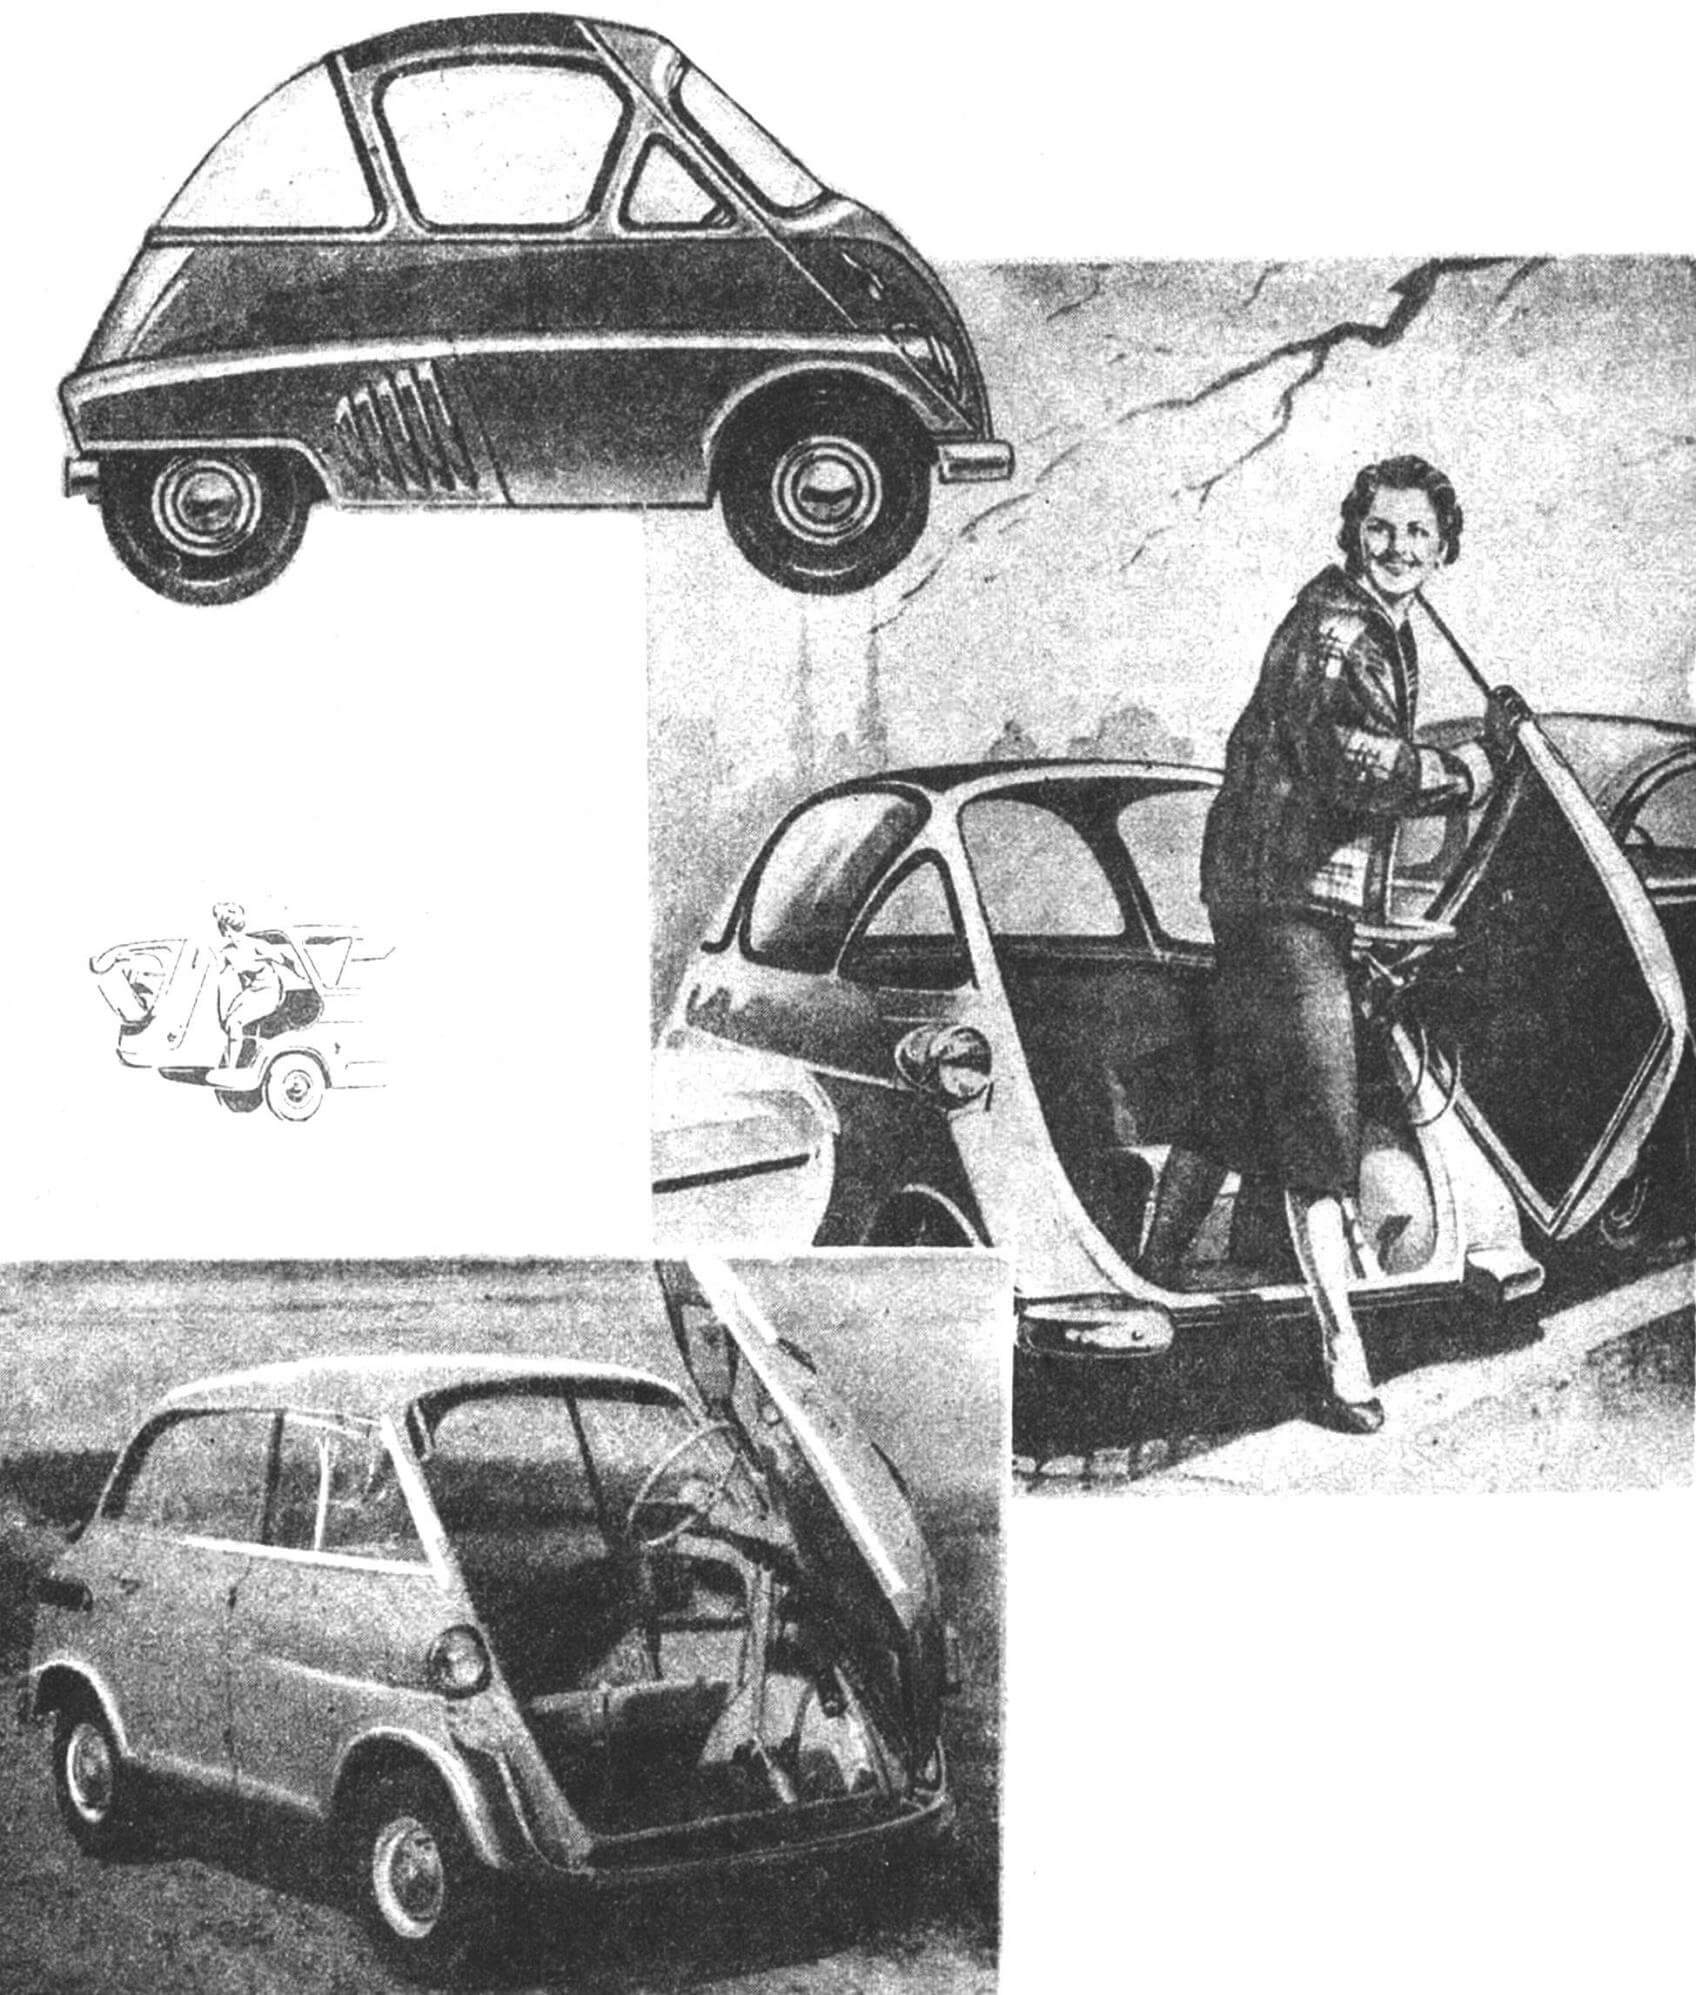 Мотоколяска «Изетта» (Италия, 1953) и ее развитие на 4-местном микроавтомобиле БМВ-600 (ФРГ, 1957). Рисунок дизайнера Э. Молчанова.